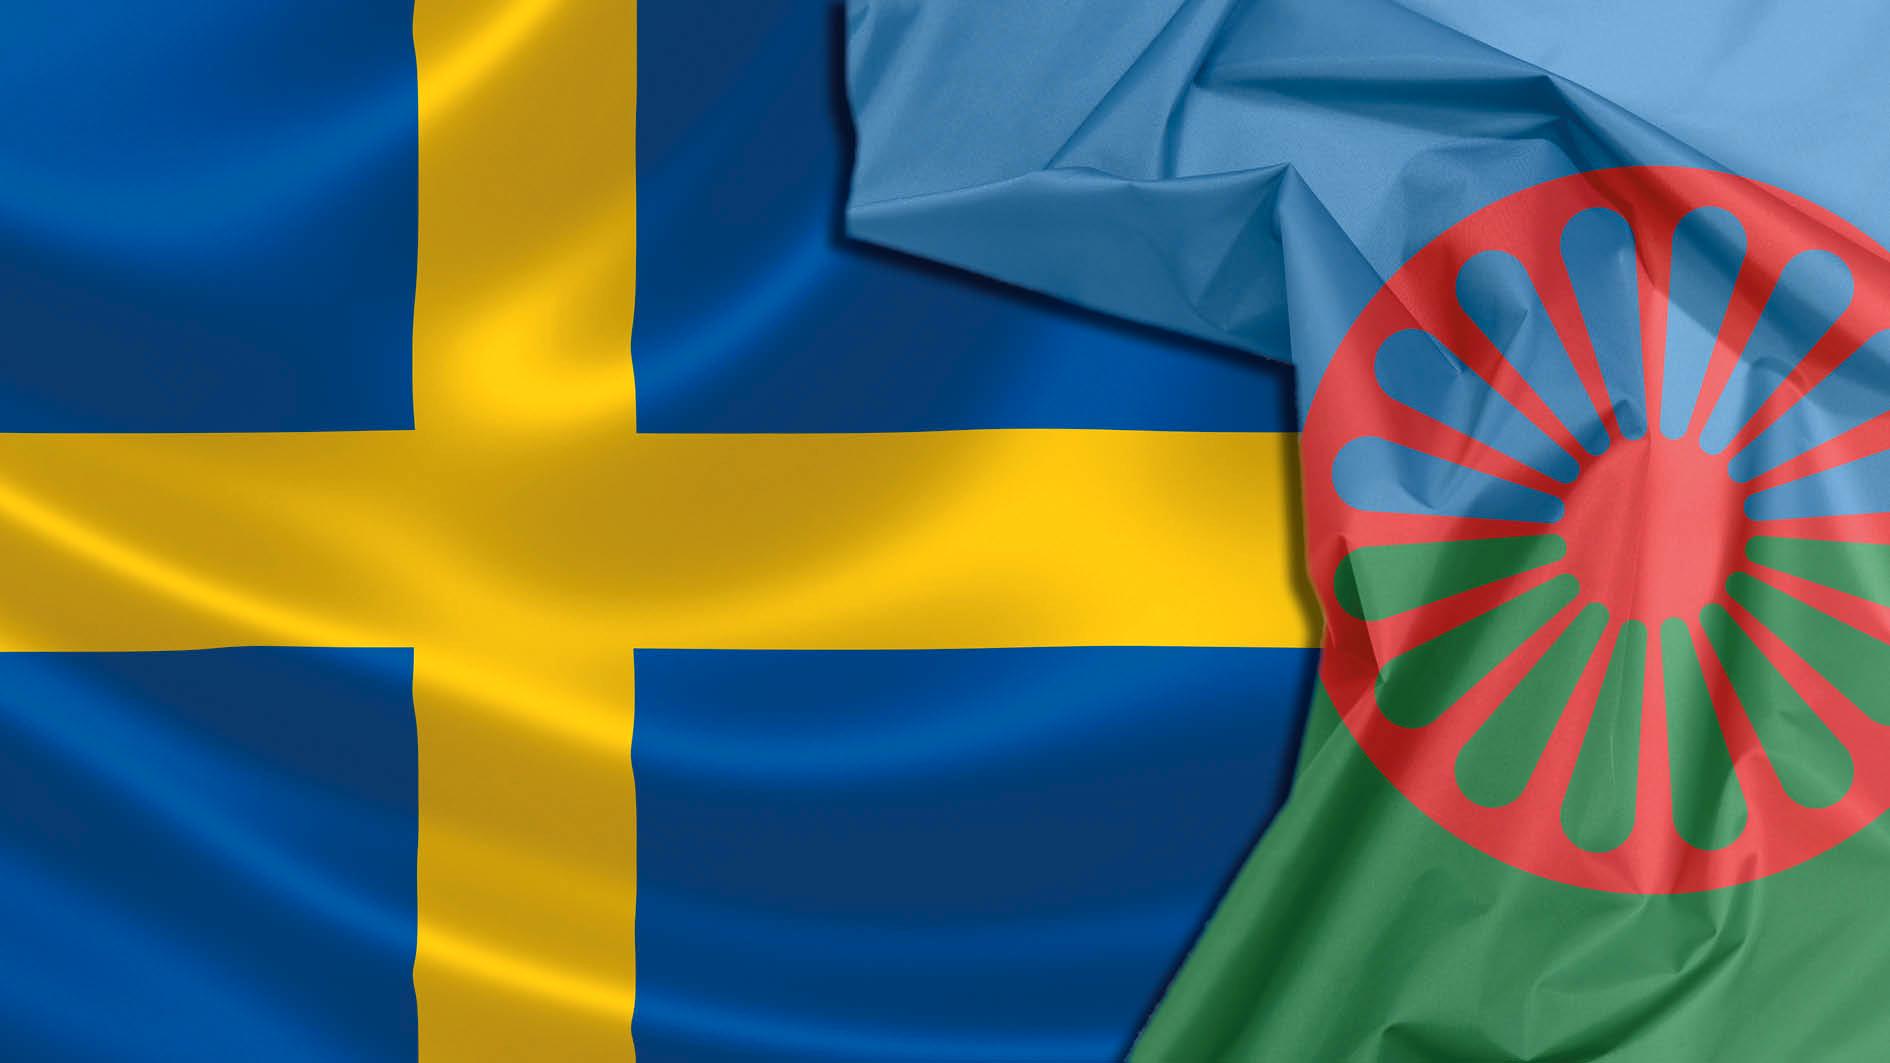 Tio år efter att Sverige antog strategin för romsk inkludering har väldigt lite hänt. Det saknas politisk vilja att upprätthålla romers grundlagsskyddade rättigheter i Sverige, skriver debattörerna.